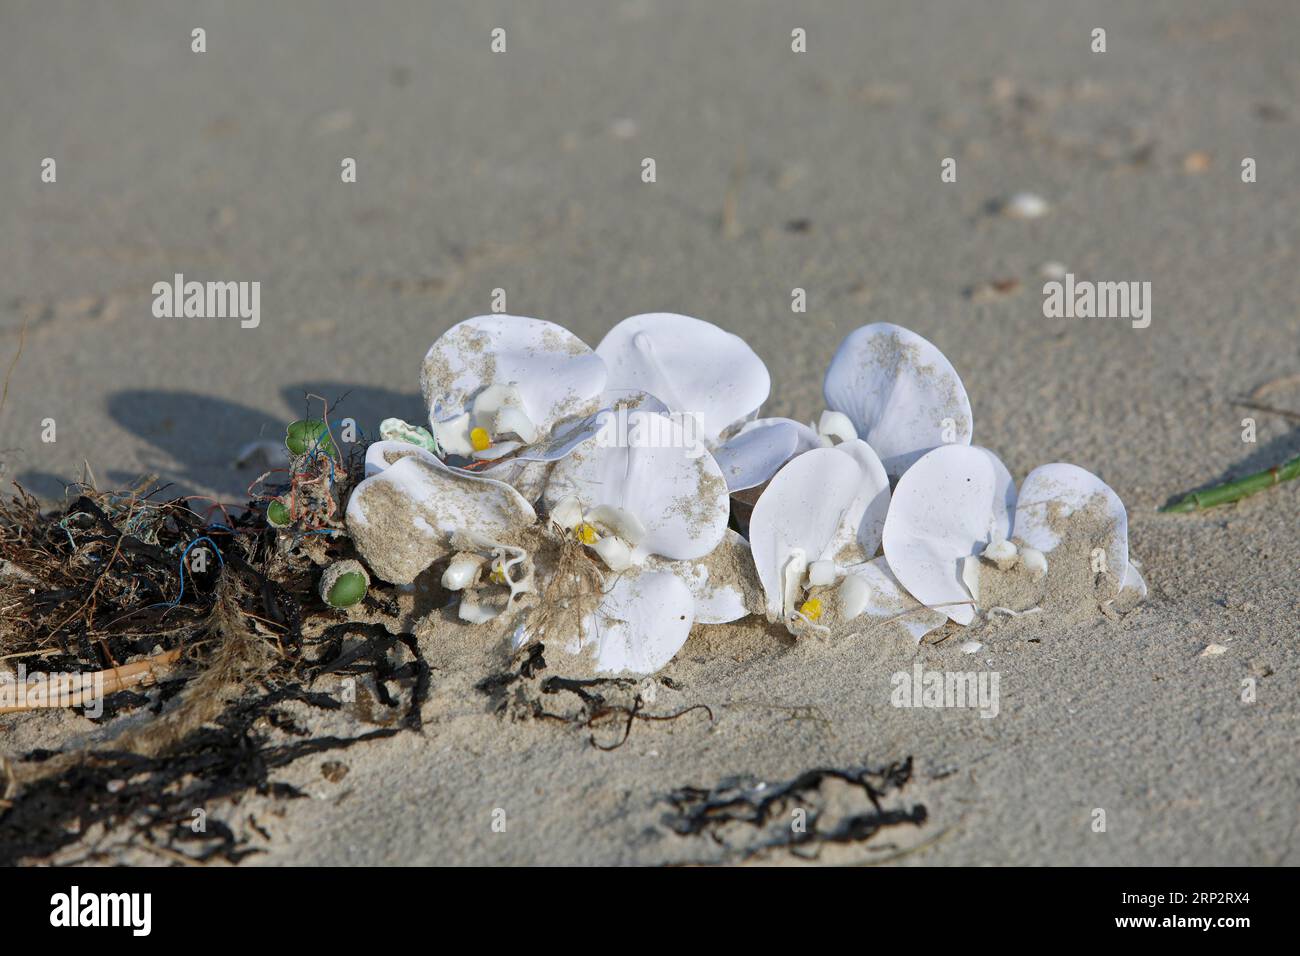 Rifiuti marini lavati sulla spiaggia, impatto umano sull'ecosistema marino, corde e plastica, Minsener Oog, bassa Sassonia, Germania Foto Stock